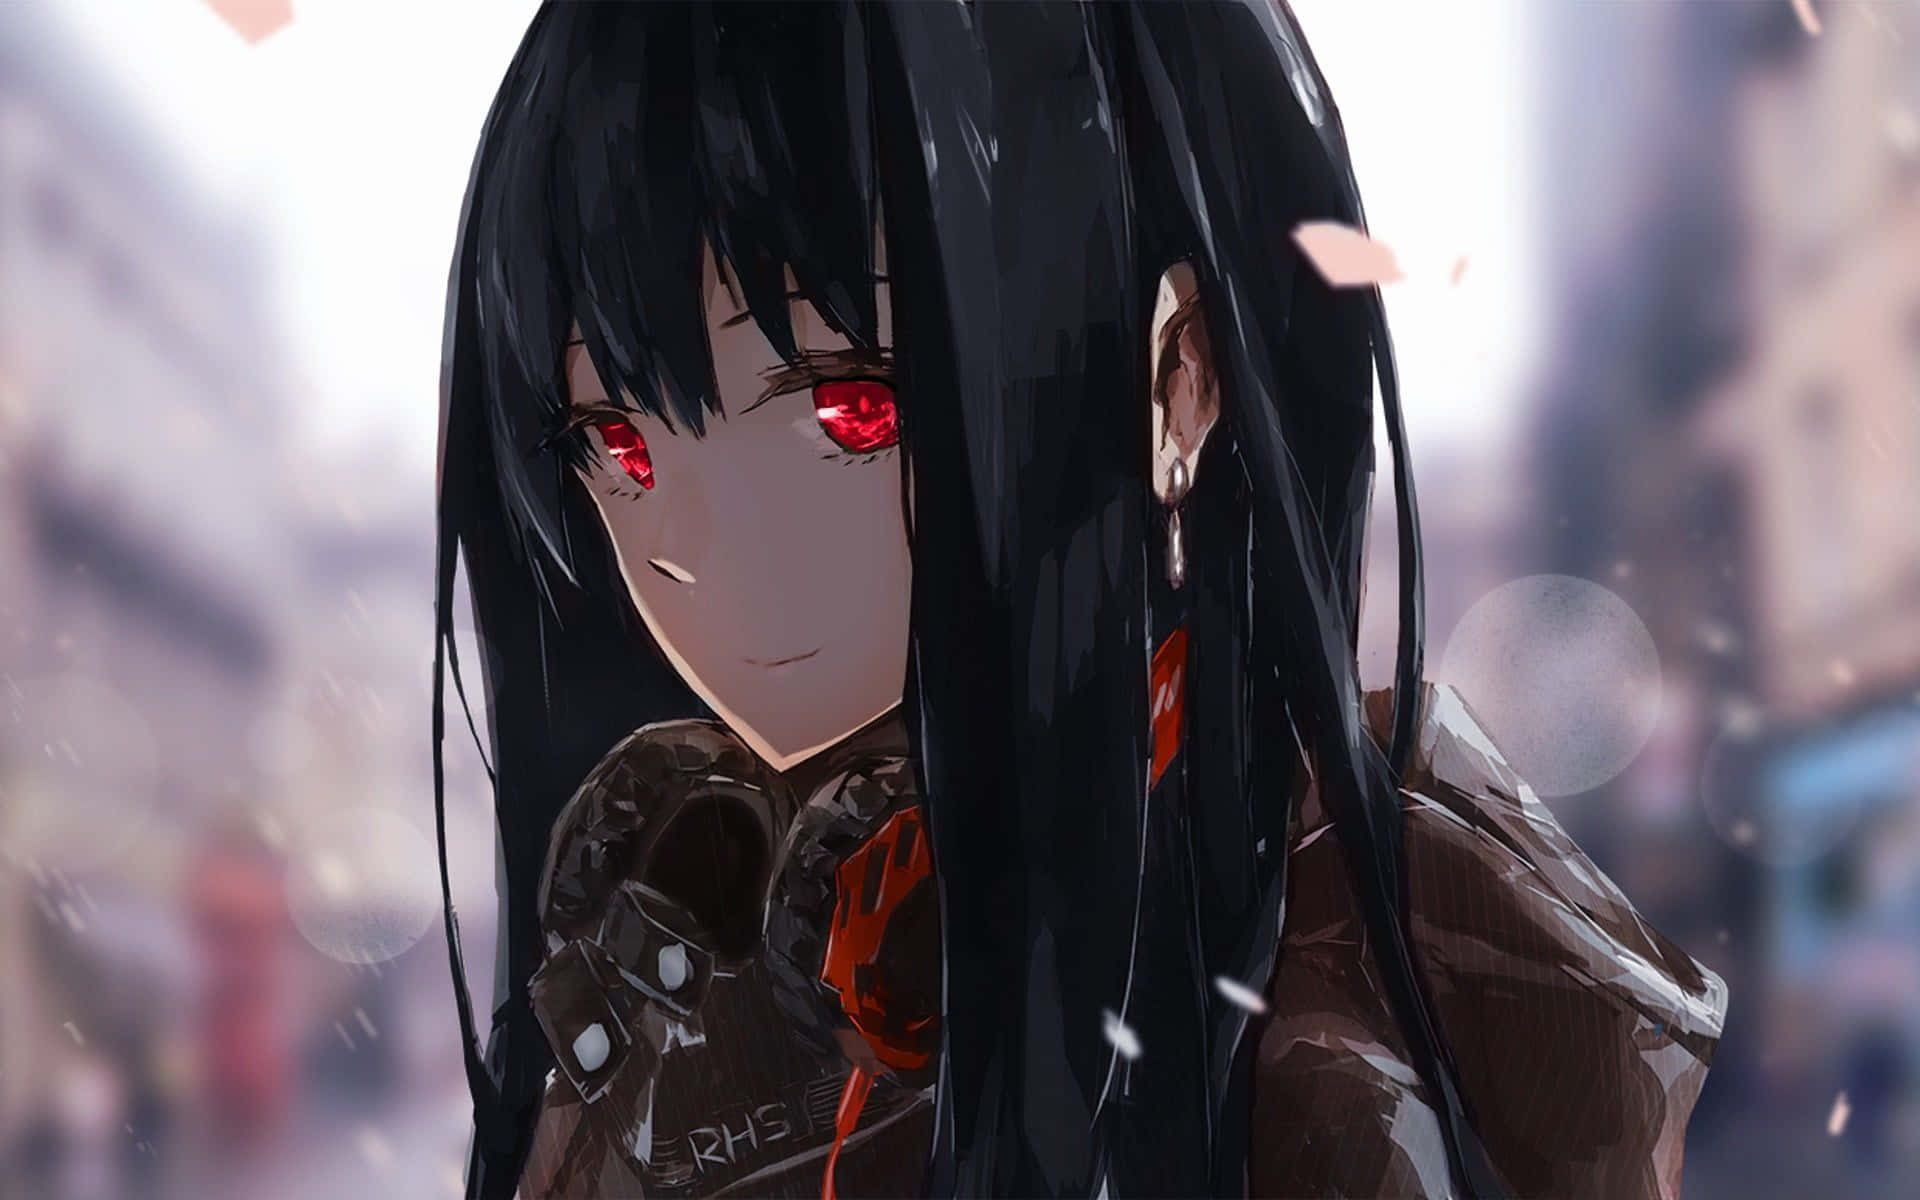 anime girl with long black hair wallpaper